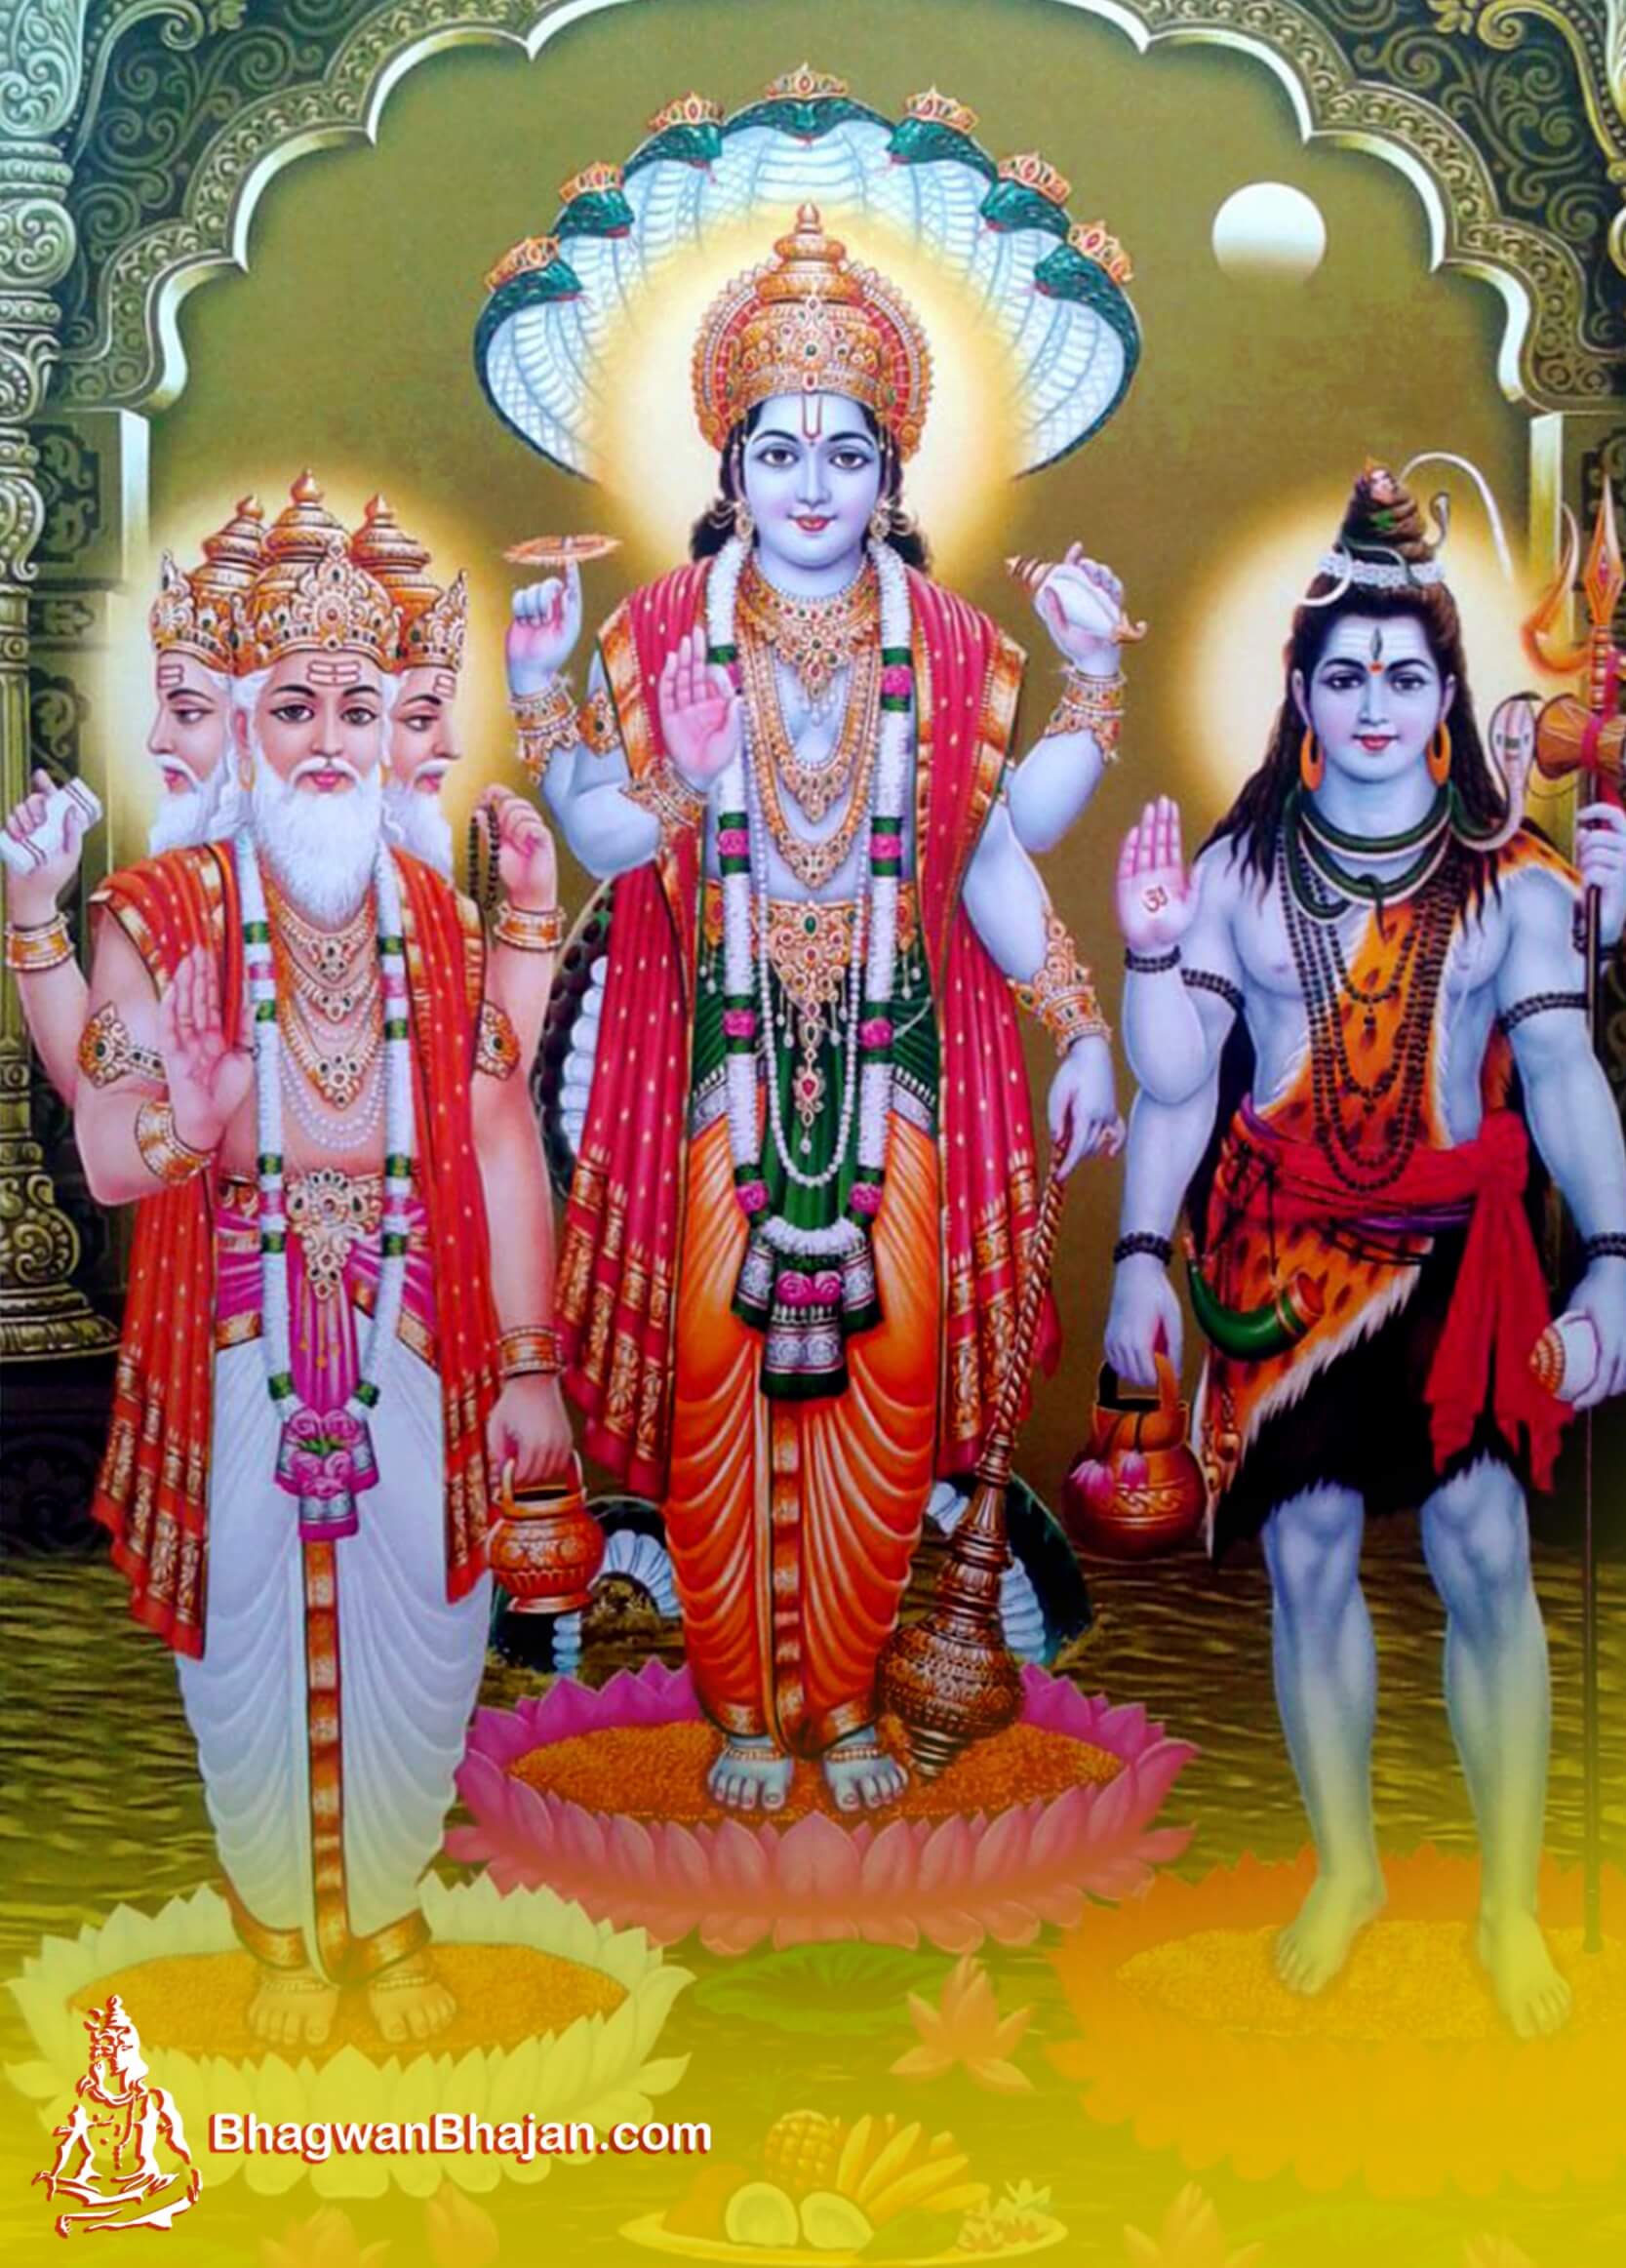 Download Free HD Wallpaper & Image of Bhagwan Vishnu. Lord